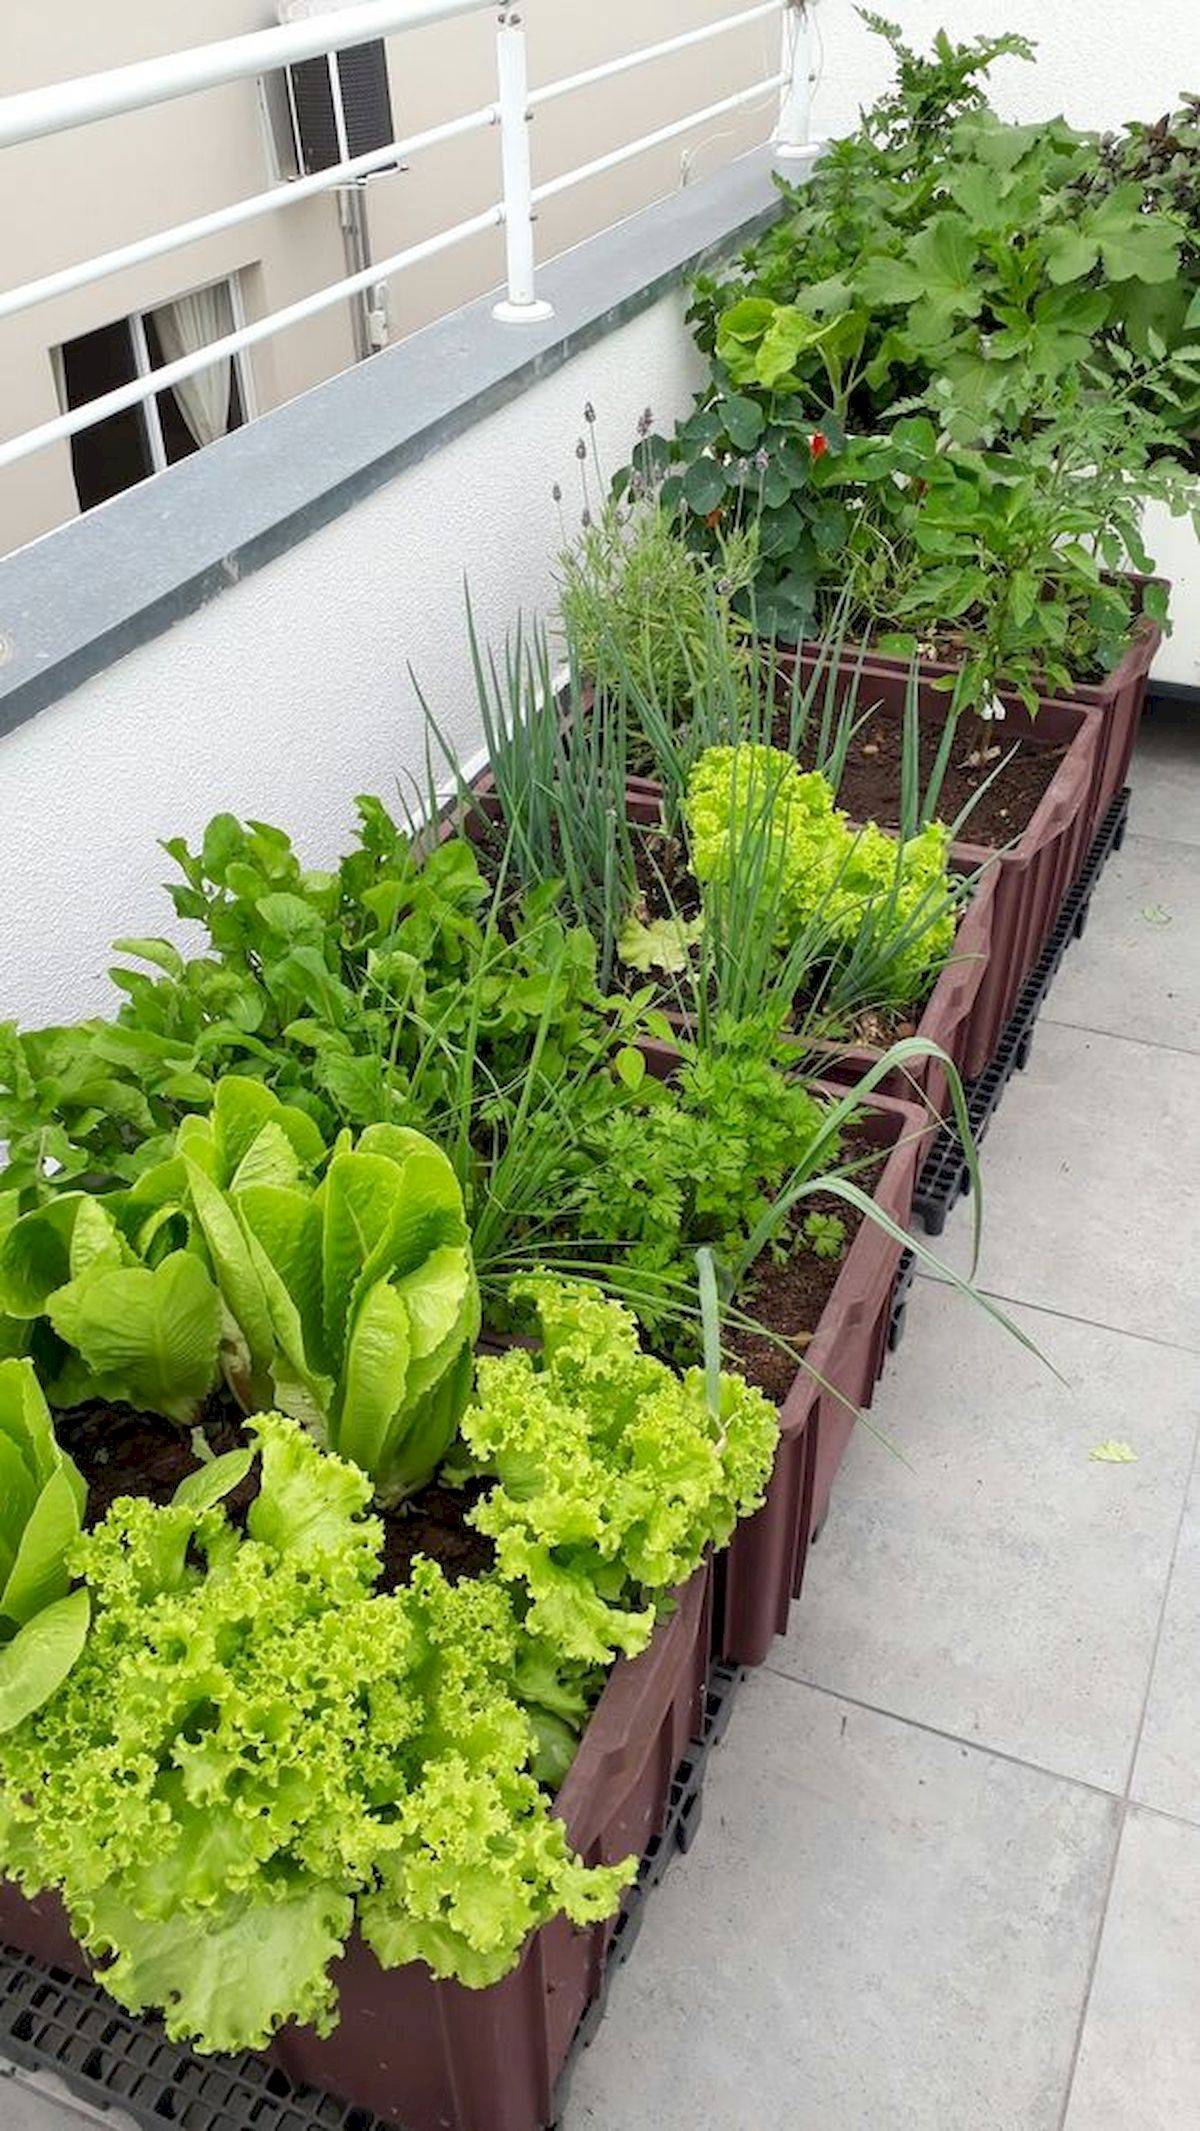 Growing A Vegetable Garden